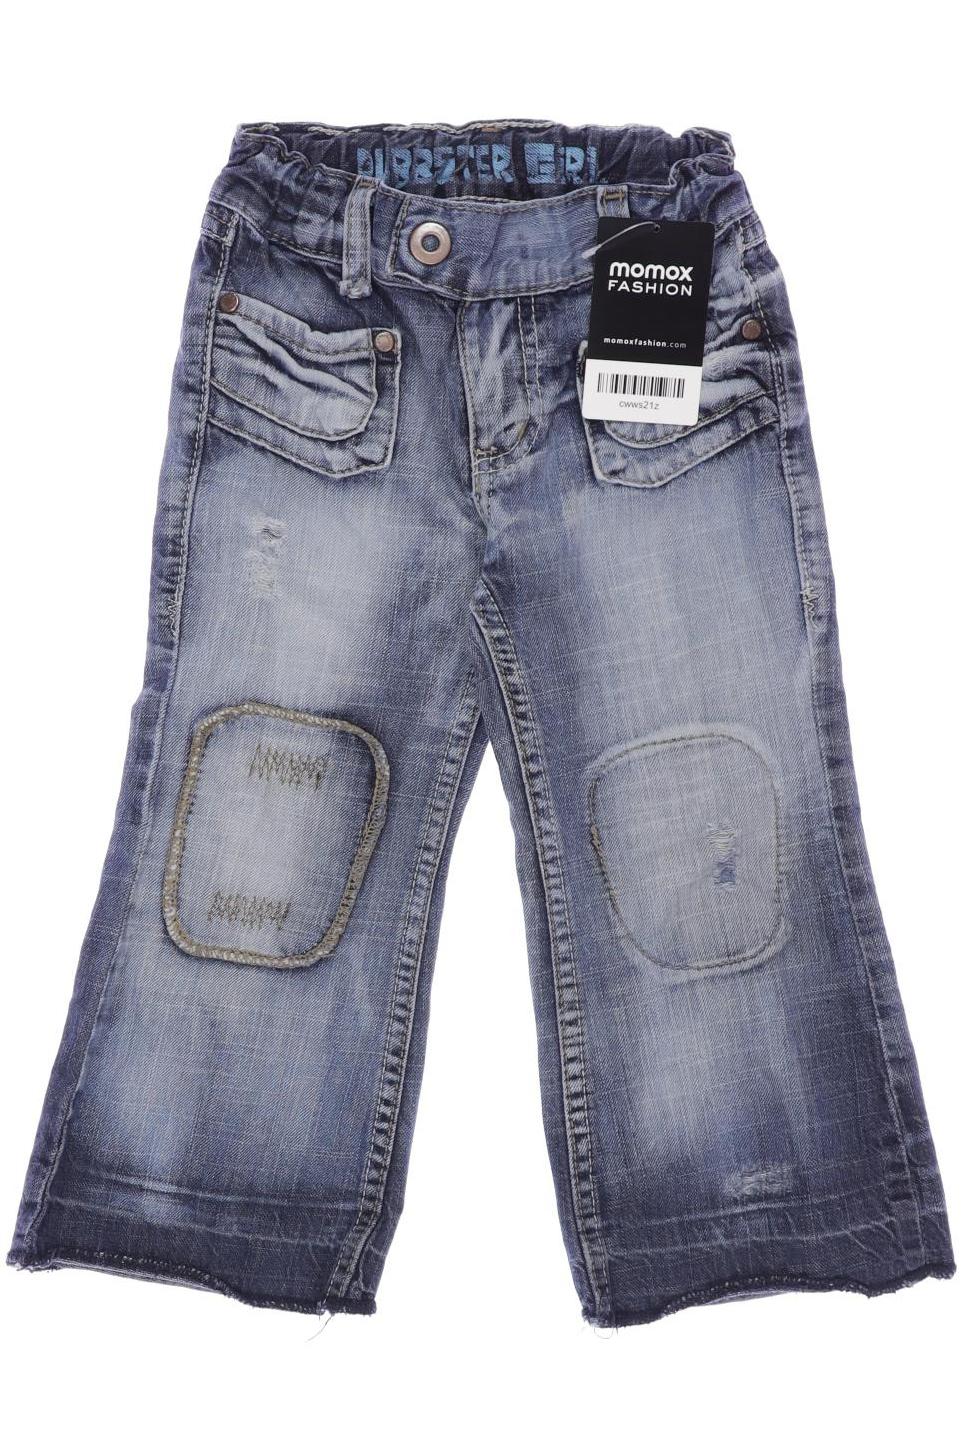 H&M Herren Jeans, blau, Gr. 92 von H&M